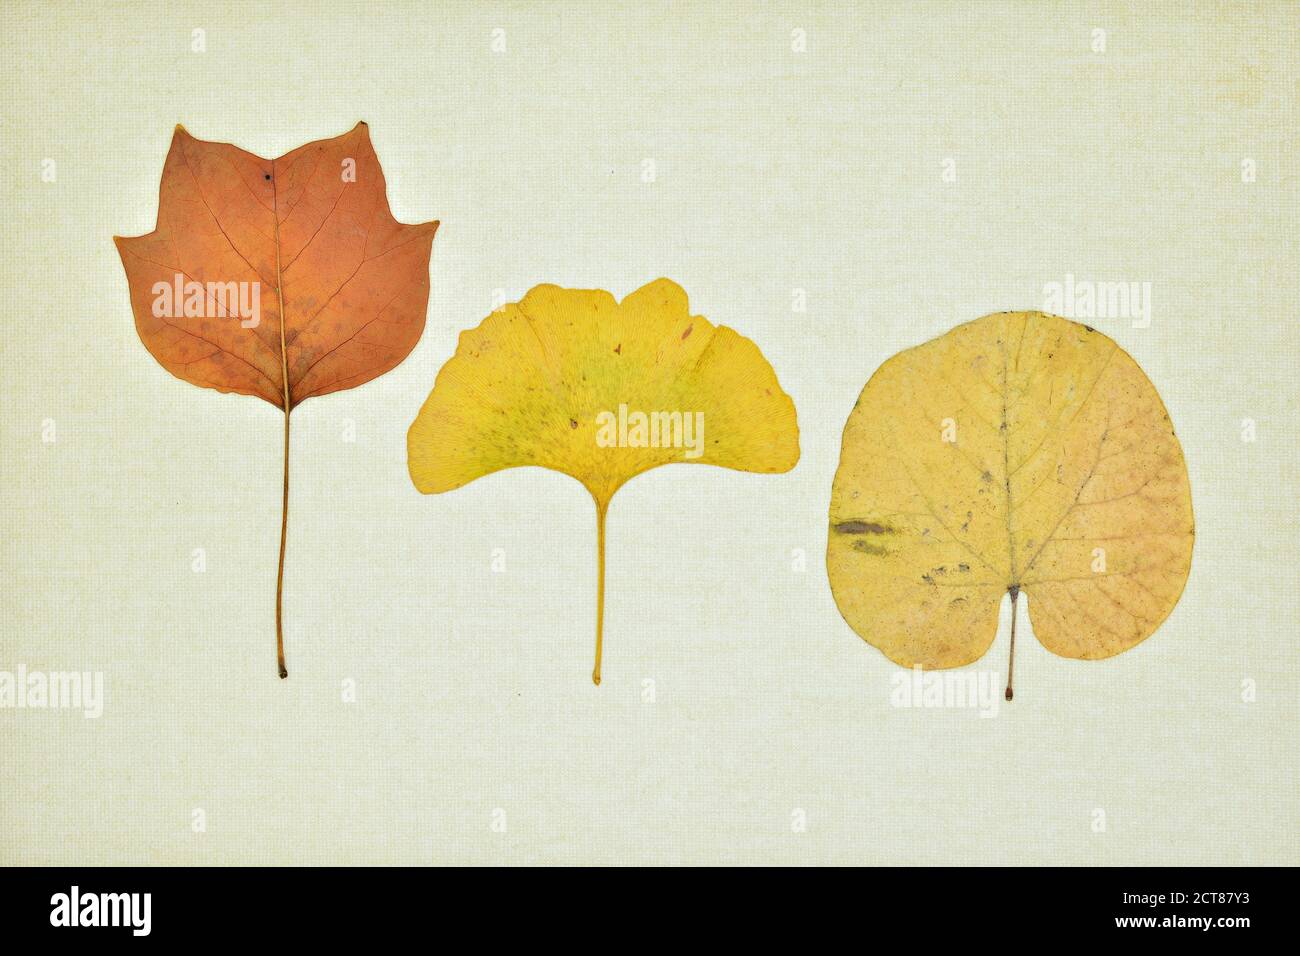 Colección de hojas secas en otoño sobre un lienzo Foto Stock